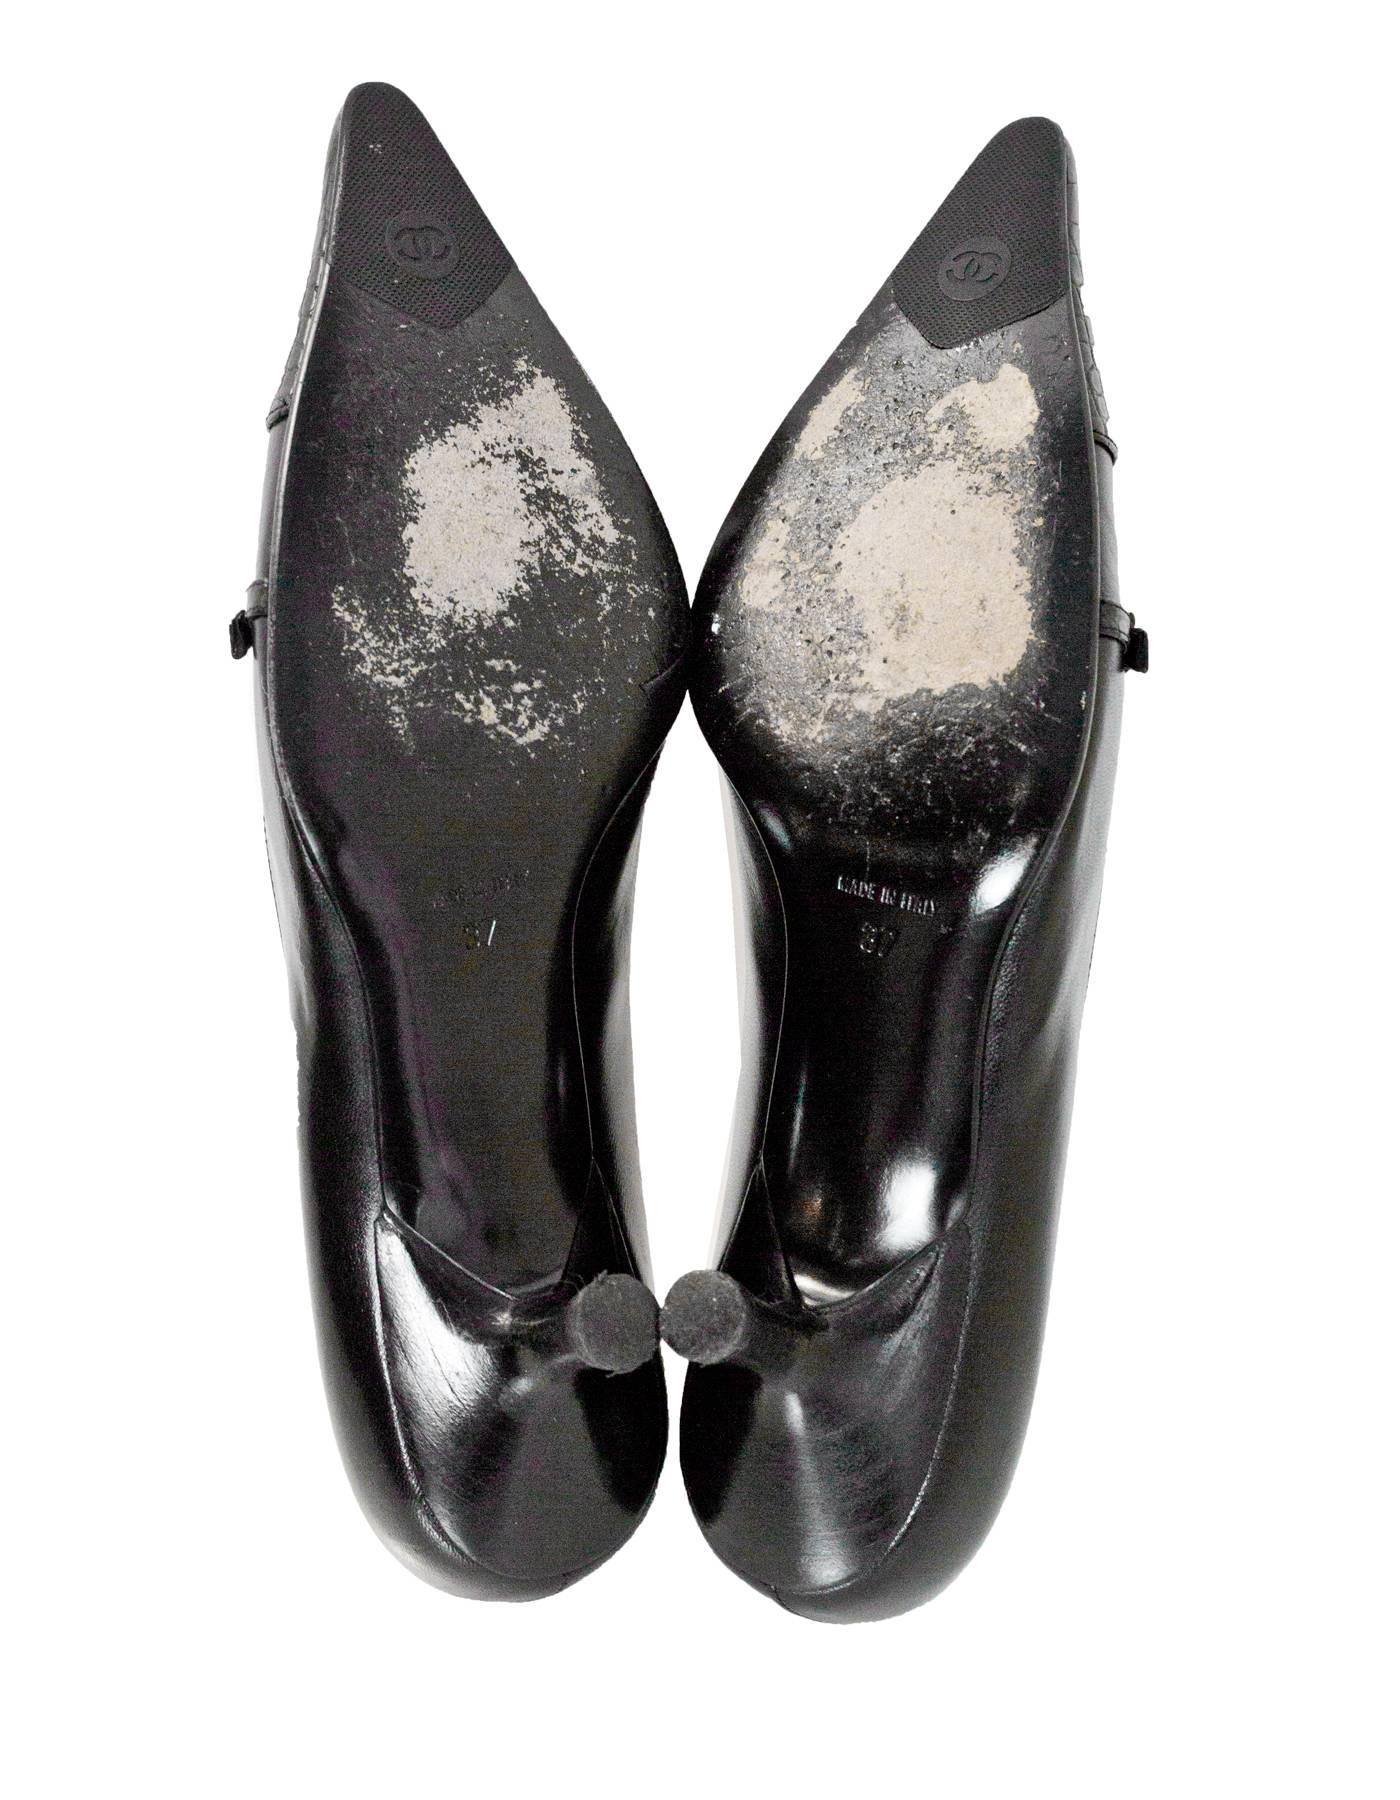 Women's Chanel Black Leather Kitten Heels Sz 37 with Box